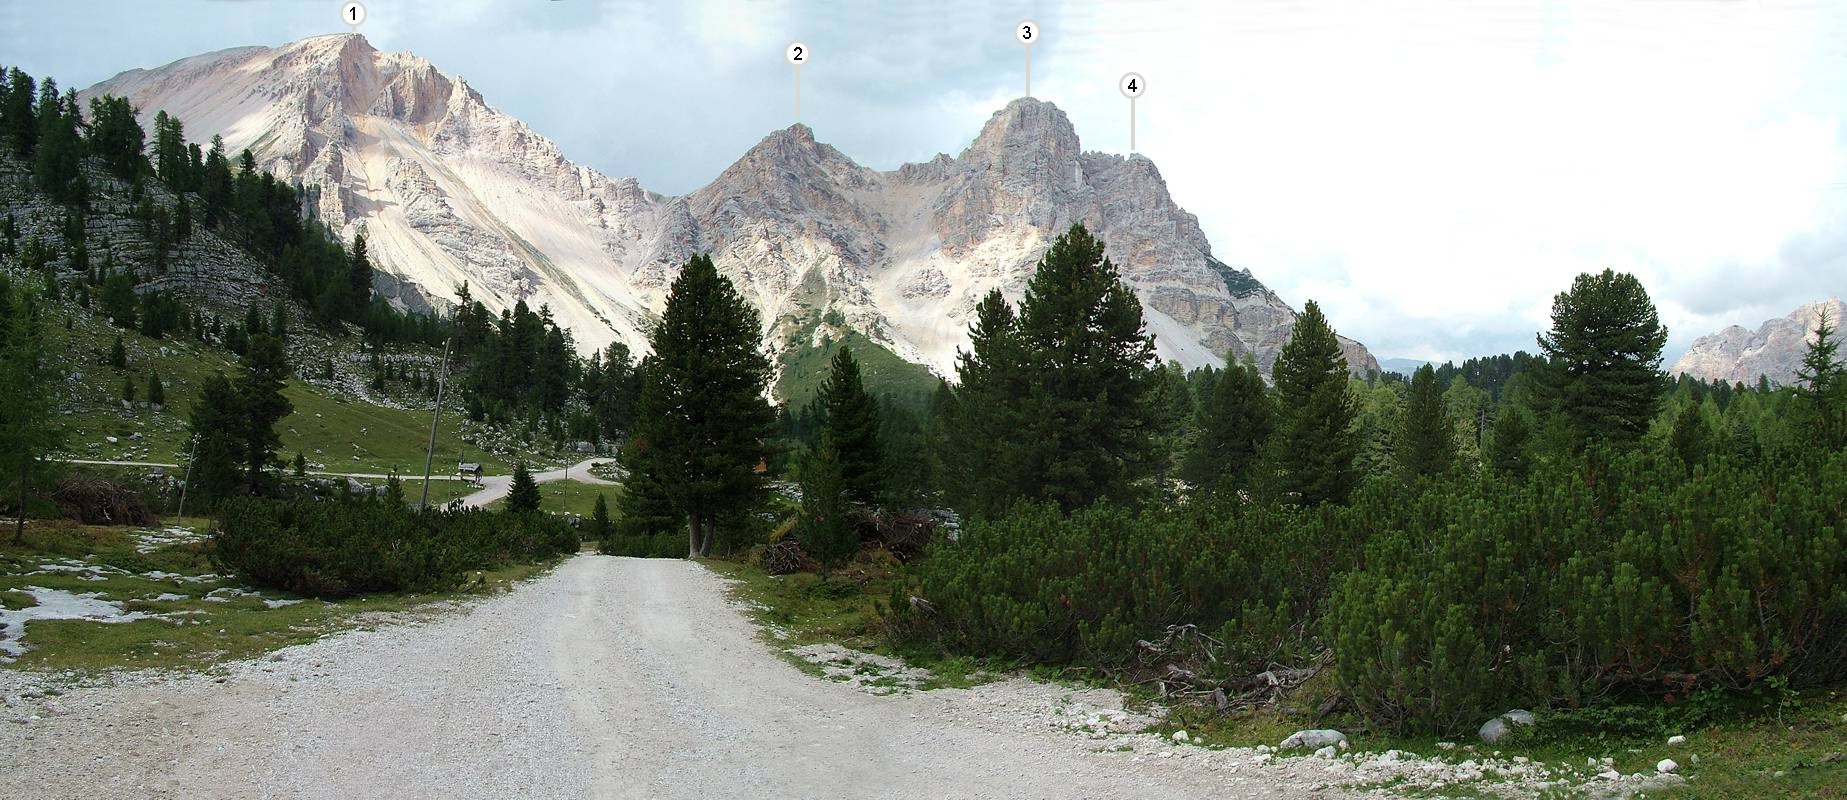 Der Blick zurück über das schöne Tal. Dort unten am Schild trennen sich die Wege zu Lavarello- und Fanes- Hütte. Die Berge sind: (1) Piz de Sant Antone [2655m], (2) namenlos [2450m], (3) namenlos [2480m] und noch eine (4) namenloser Berg [2404m].